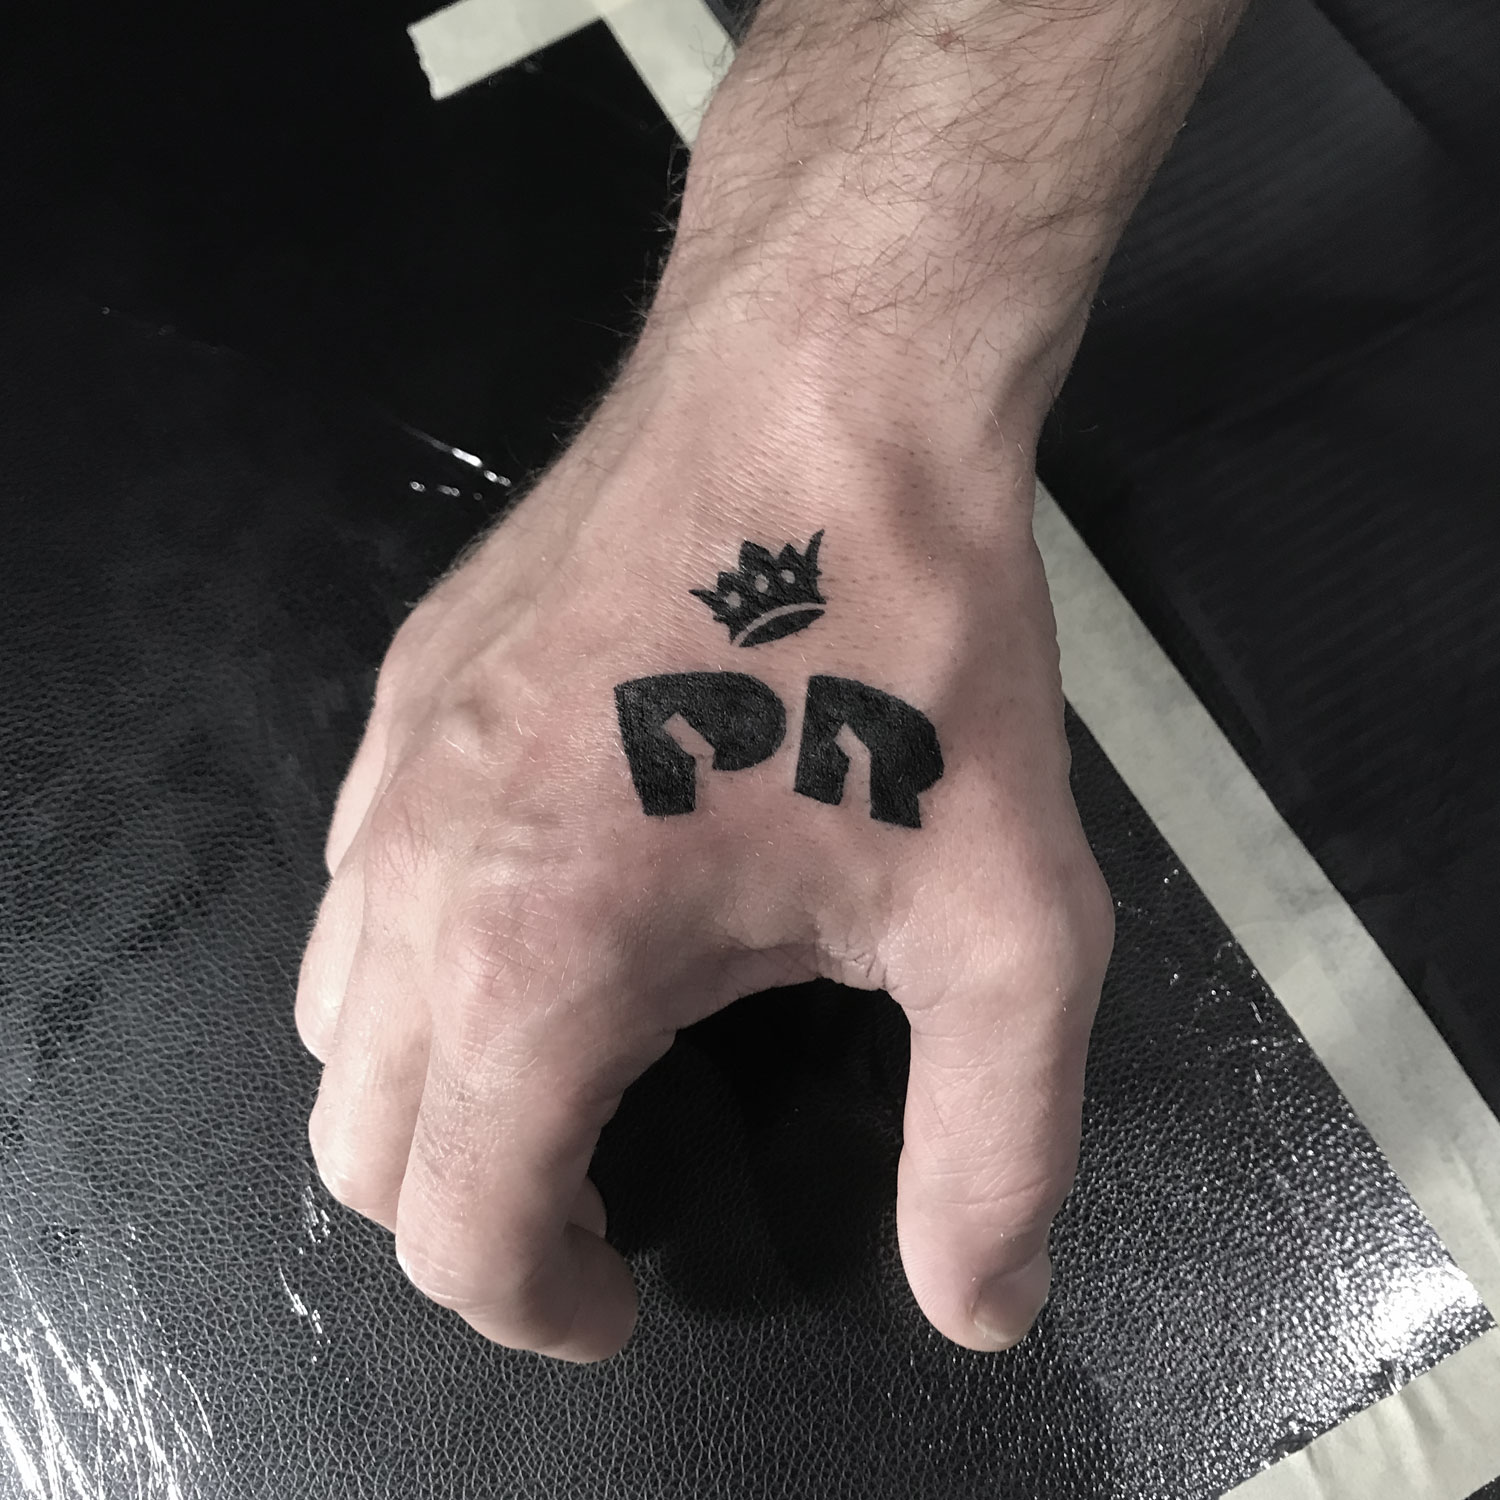 Tatuaje black work de un logo